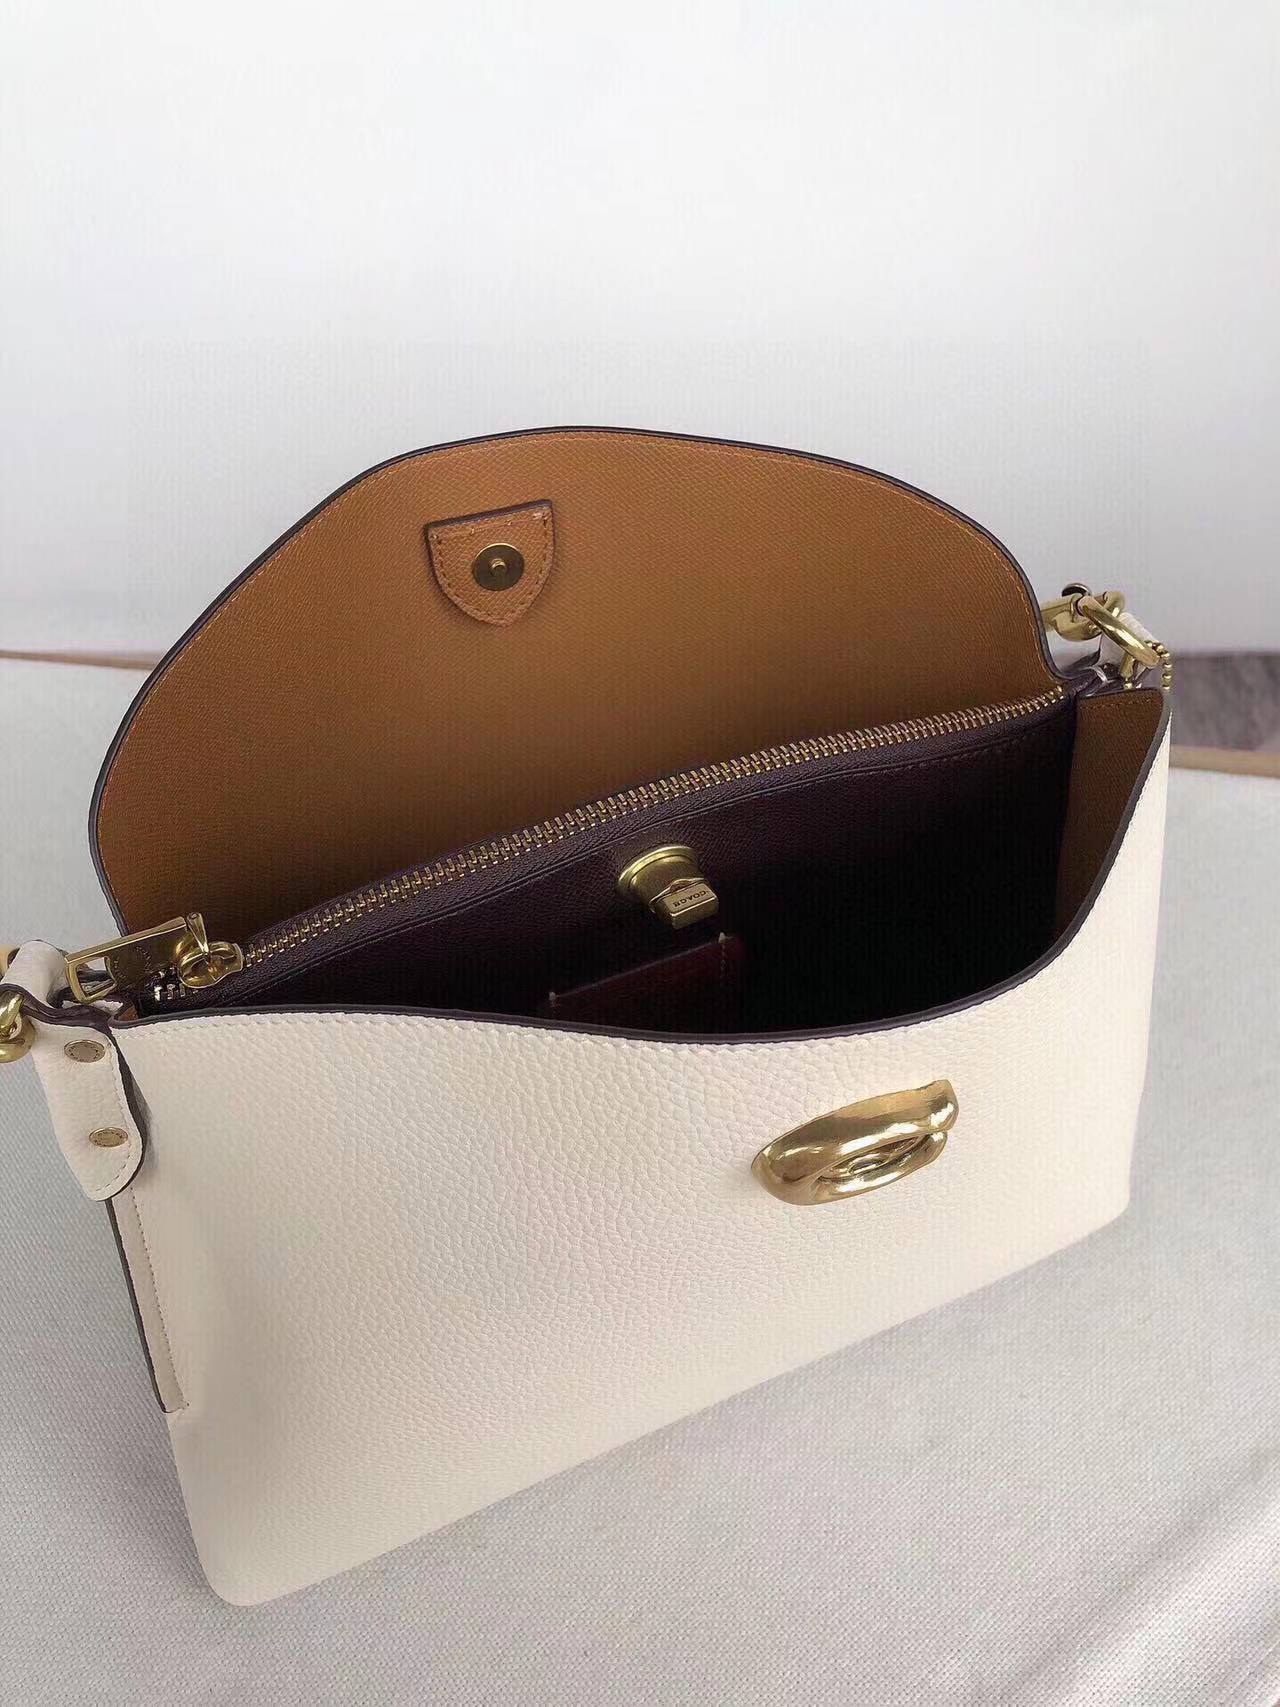 Luxury accessories women's handbag